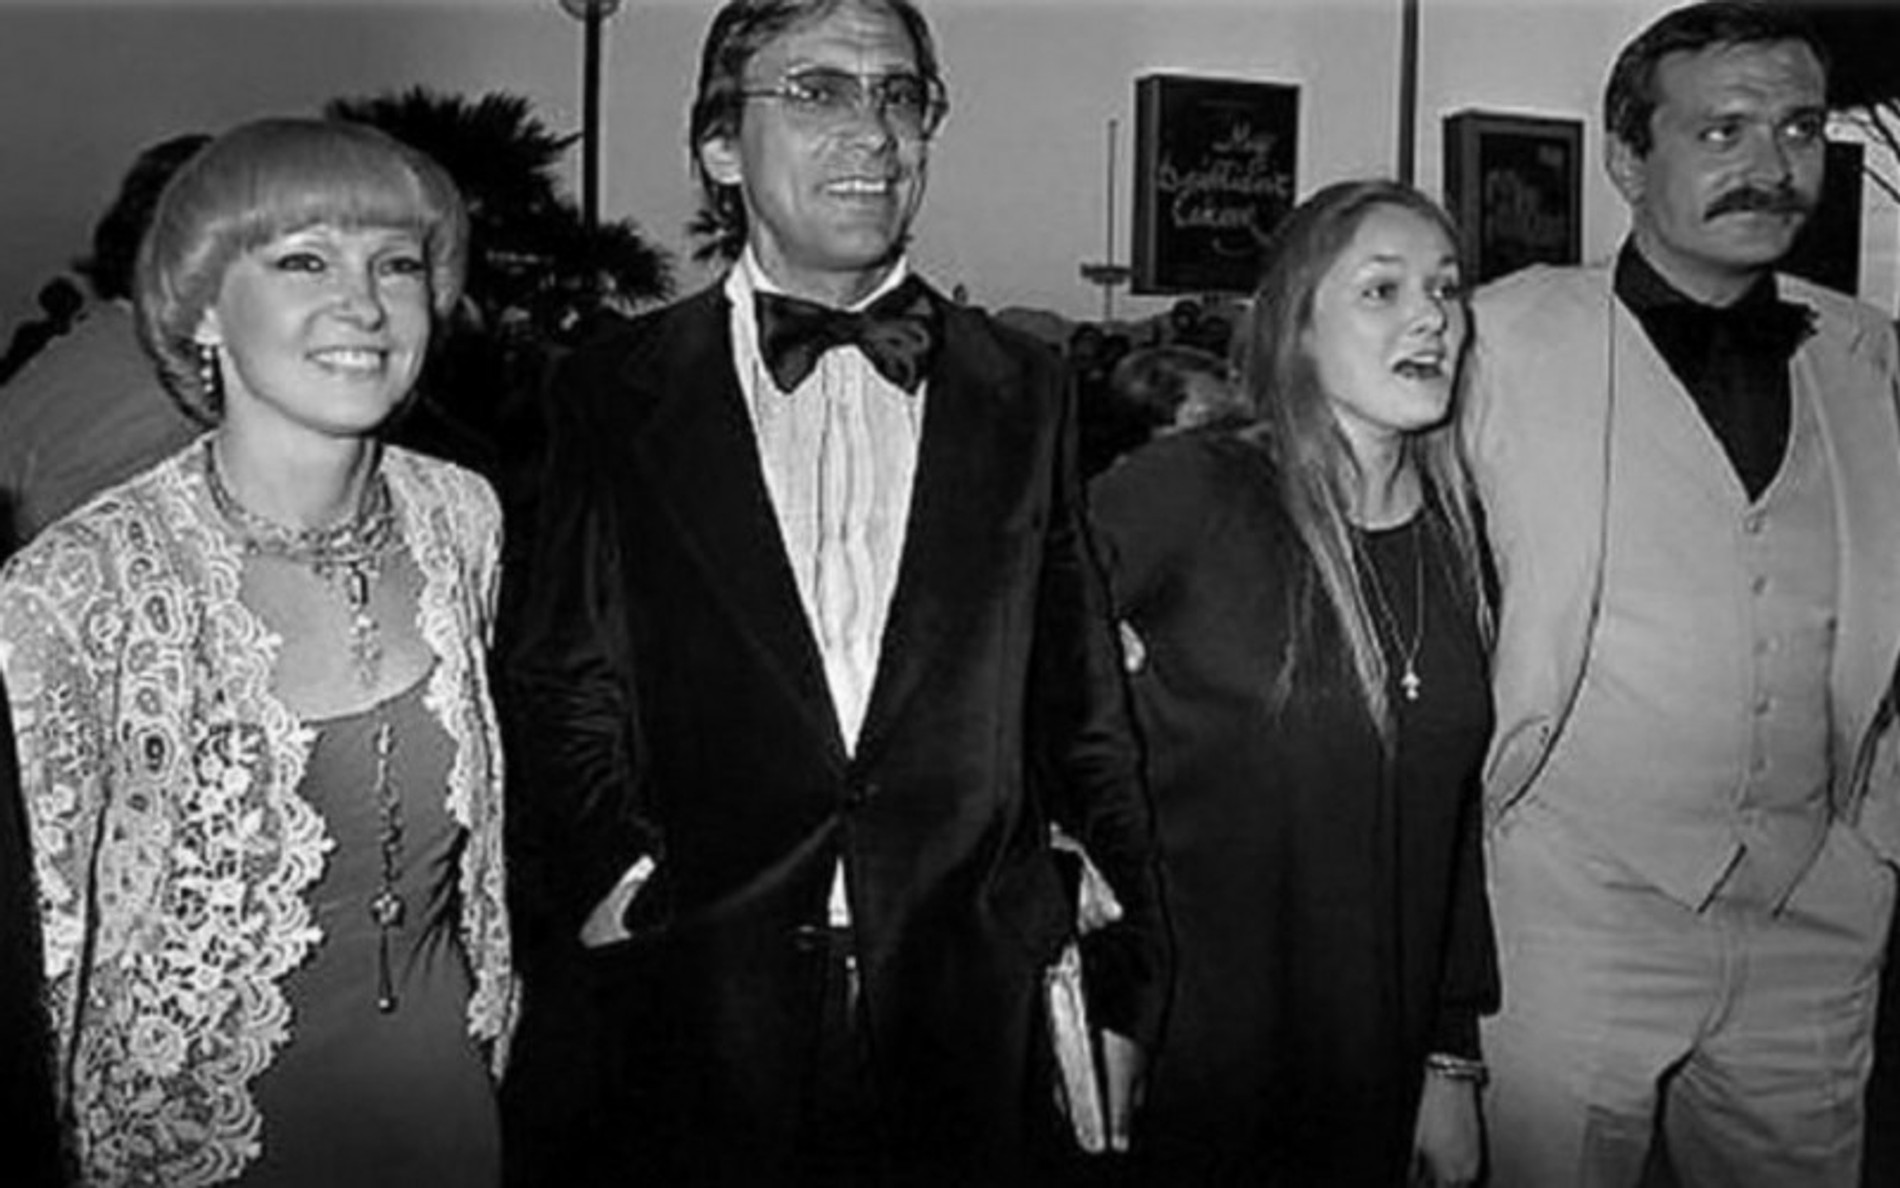  Людмила Гурченко, Андрей Кончаловский, Наталья Андрейченко и Никита Михалков, 1979